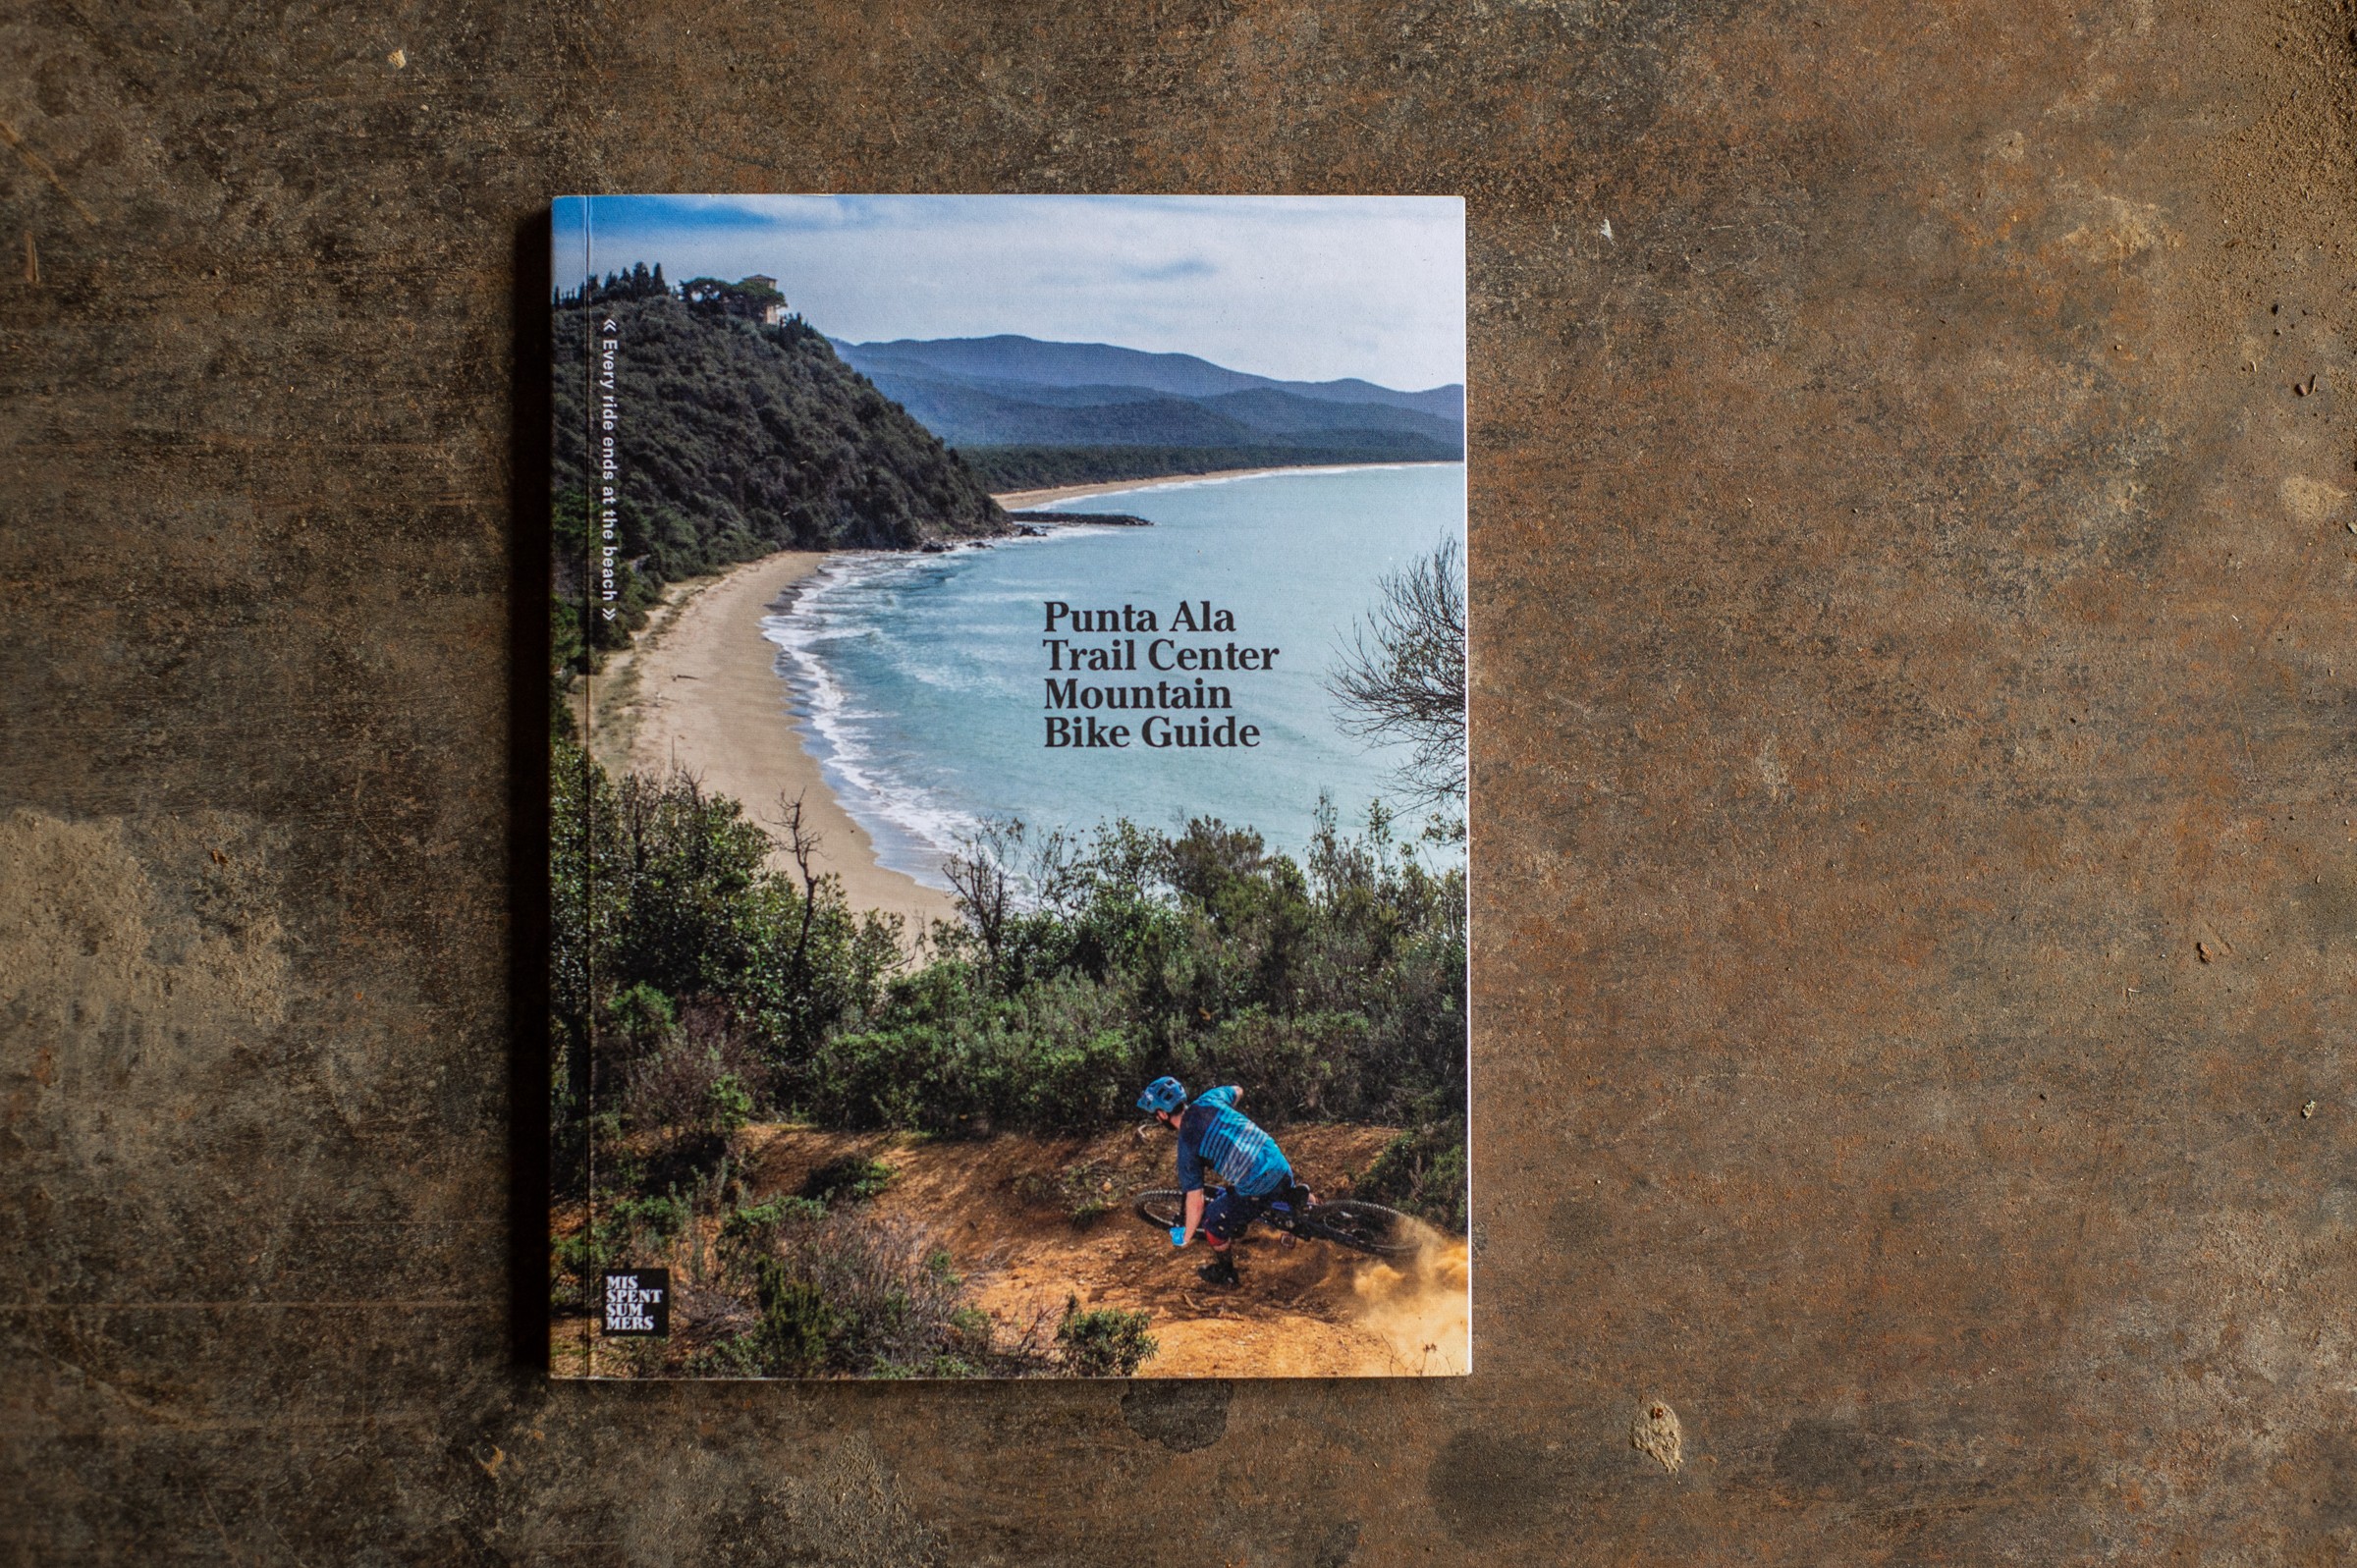 Punta-ala-trail-center-guide-book-5974